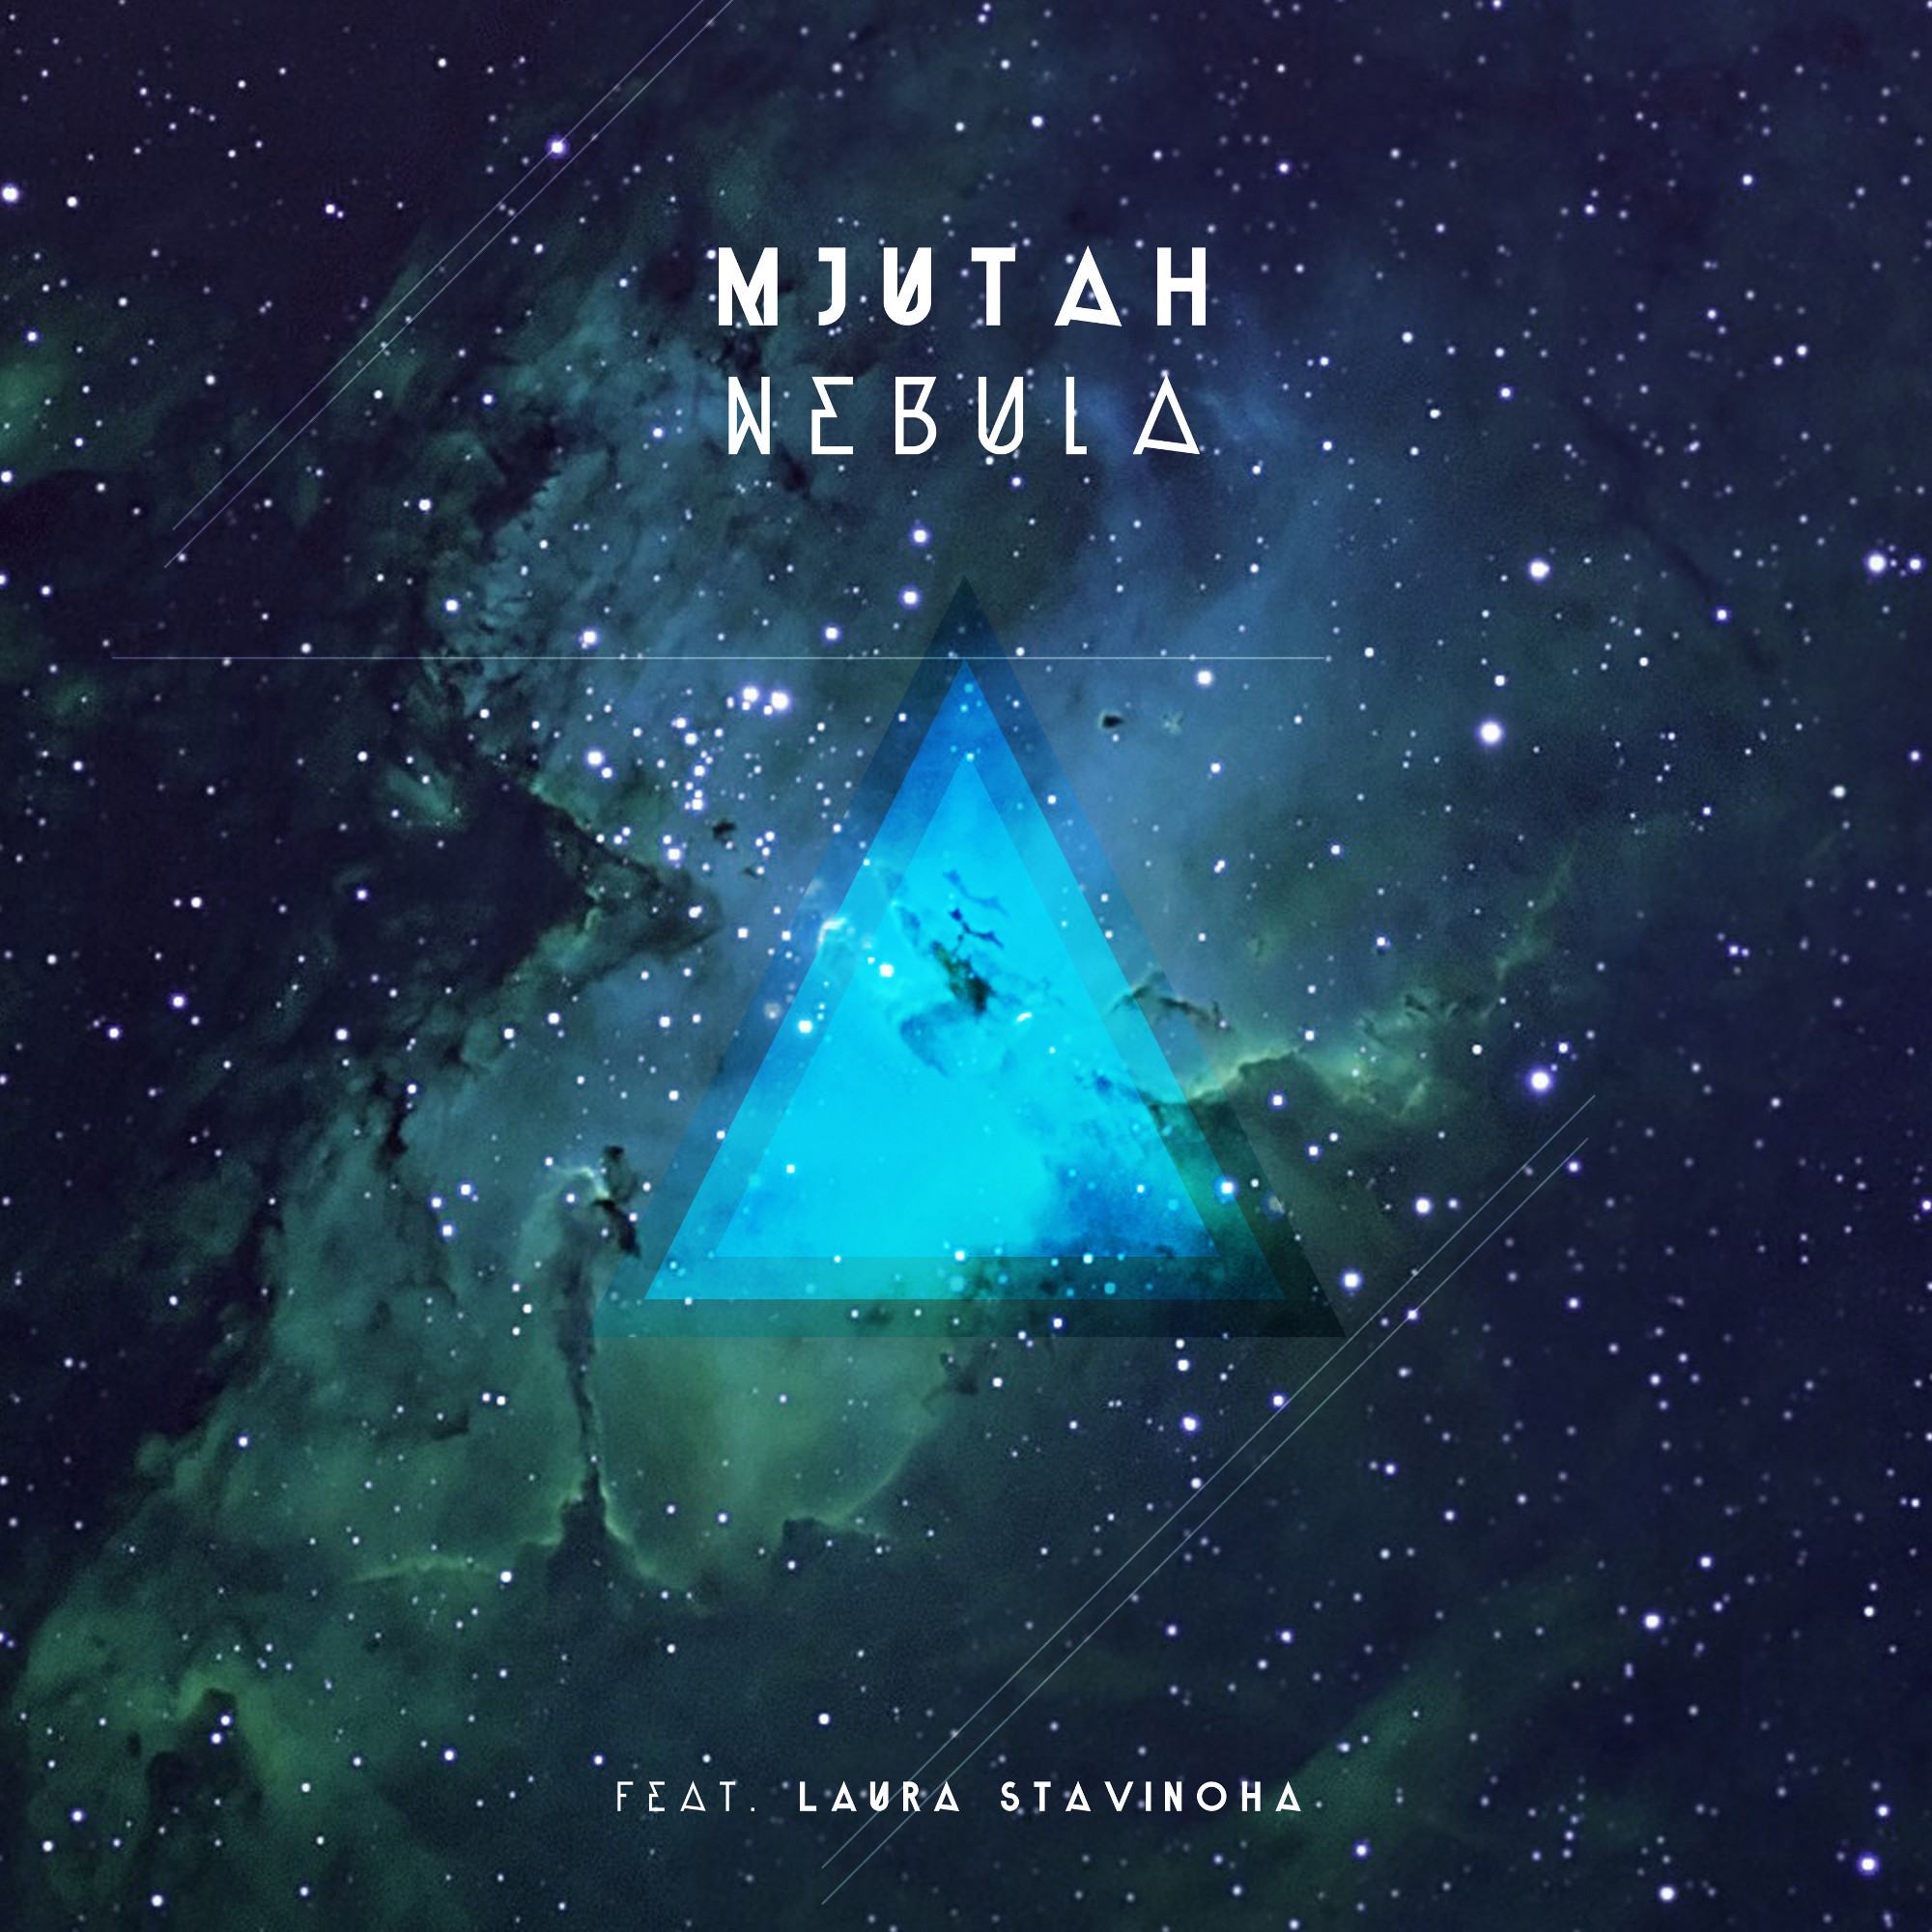 Mjutah - Nebula EP